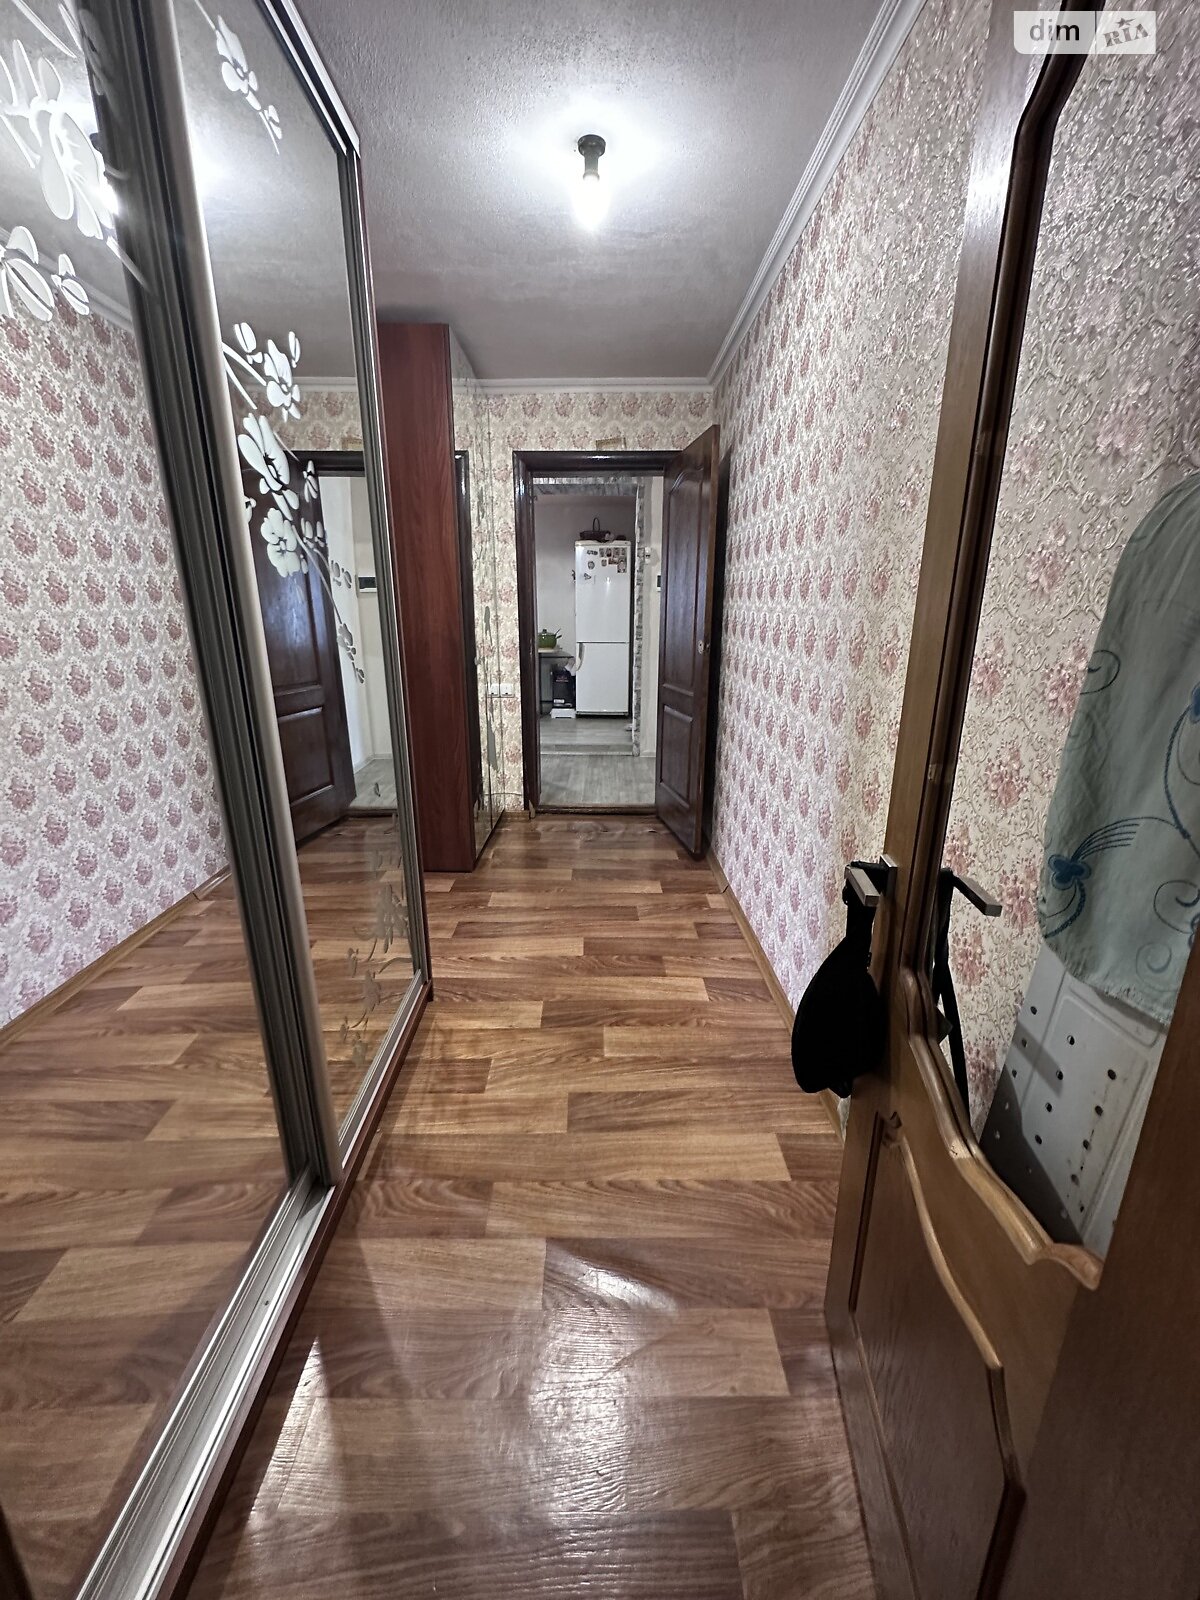 Продажа части дома в Днепре, улица Старый Вал (Сибирская), район Кайдаки, 2 комнаты фото 1